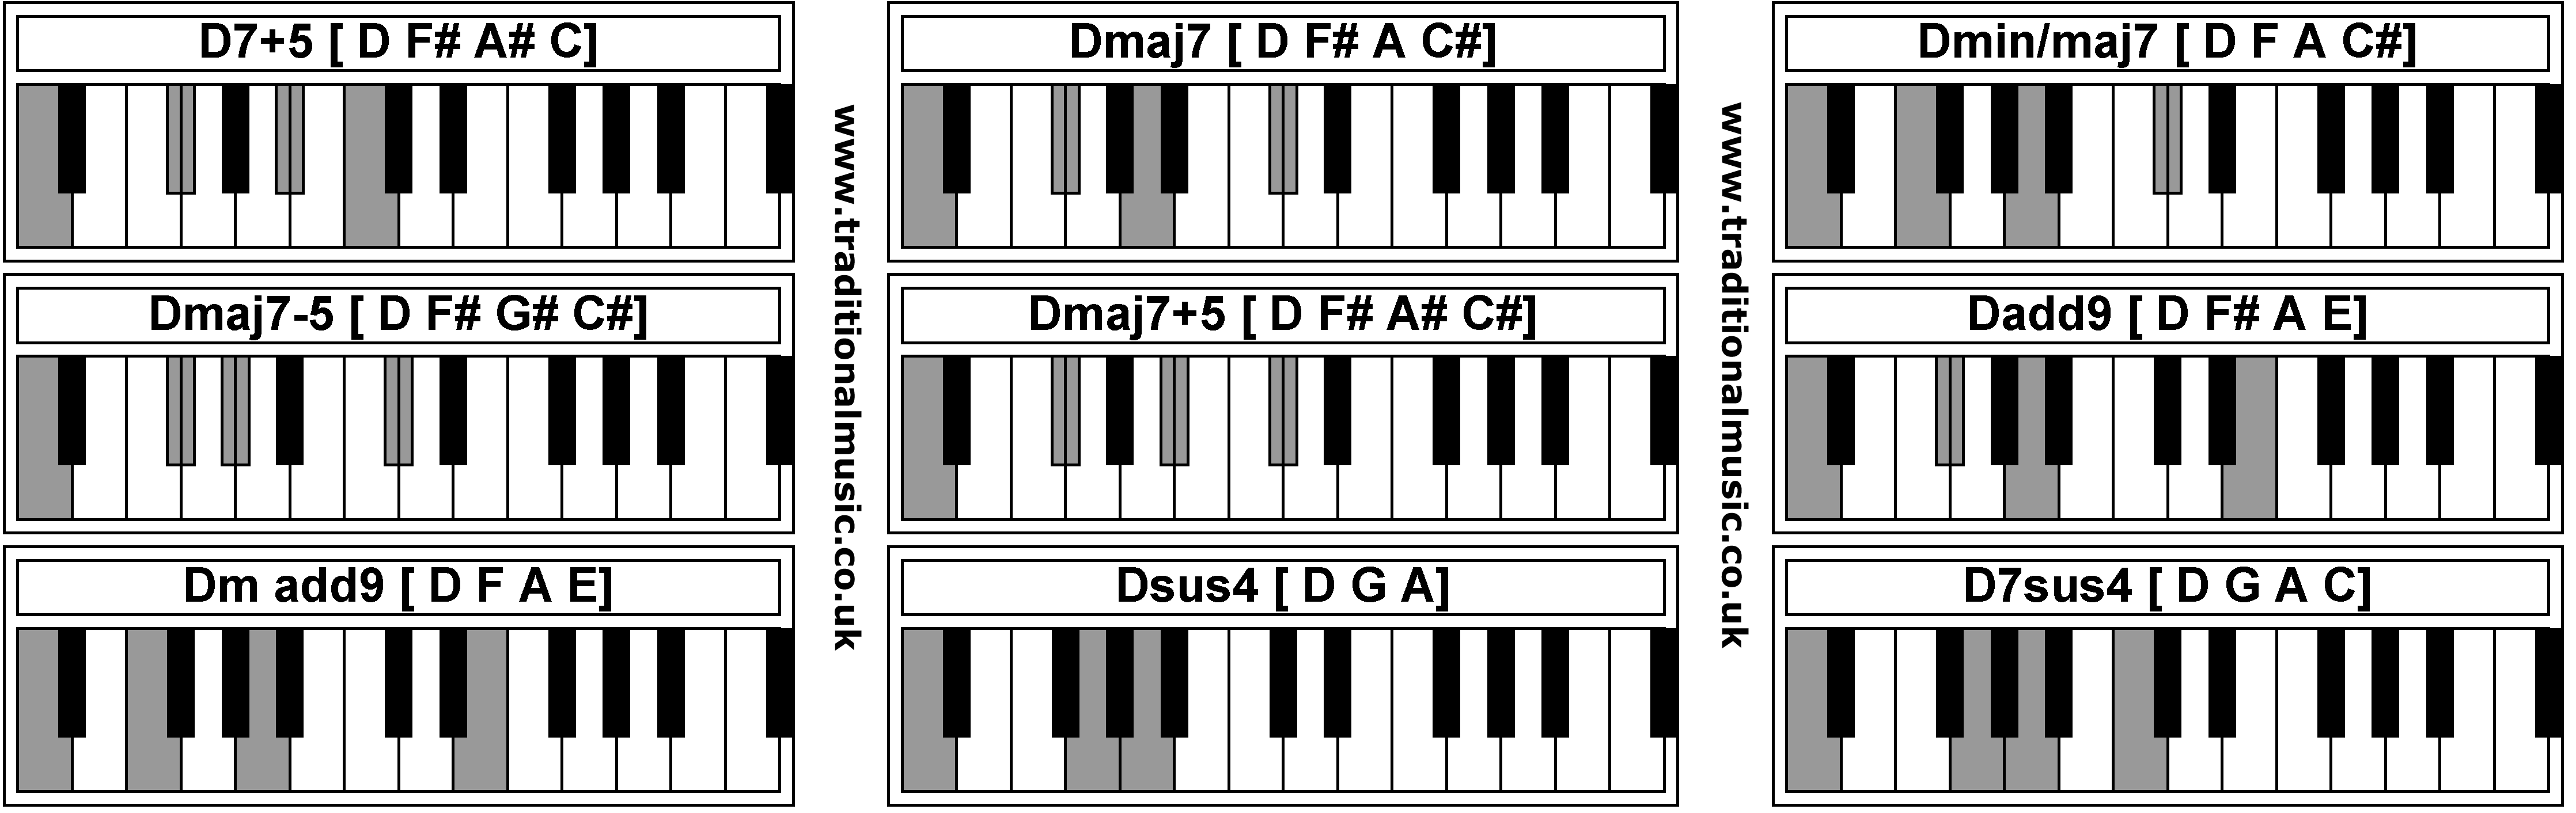 Piano Chords - D7+5  Dmaj7  Dmin/maj7  Dmaj7-5  Dmaj7+5  Dadd9  Dm add9  Dsus4  D7sus4